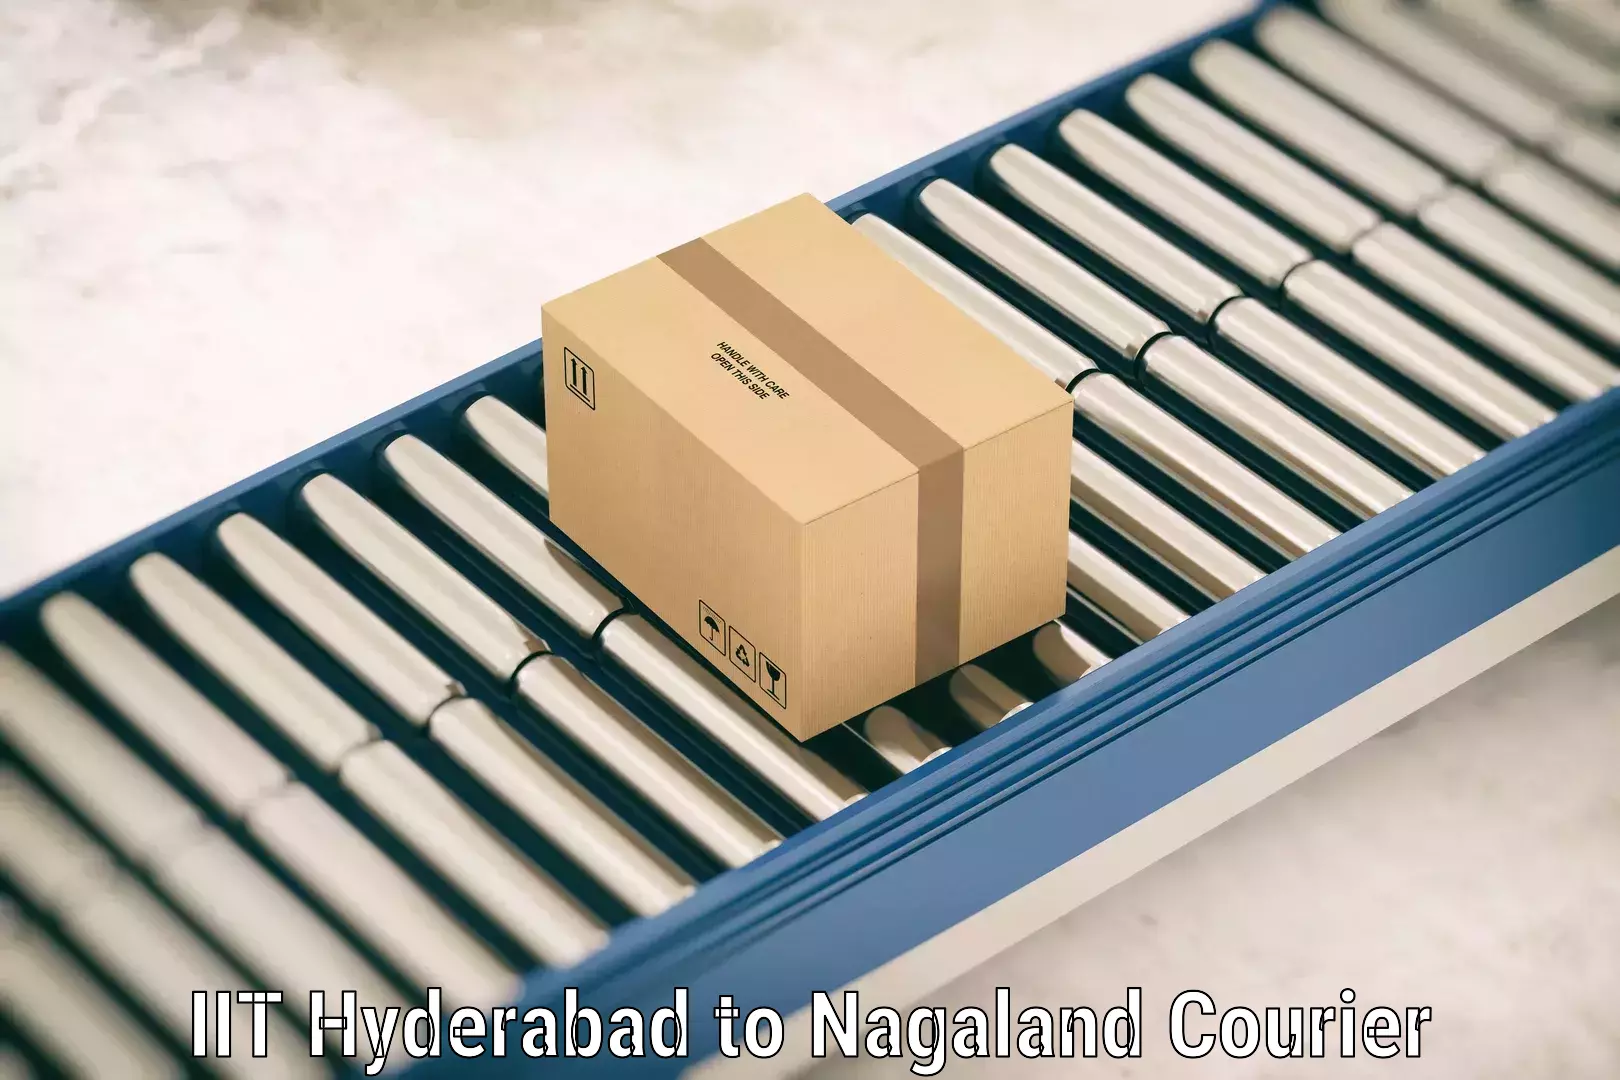 Luggage delivery app IIT Hyderabad to Kohima